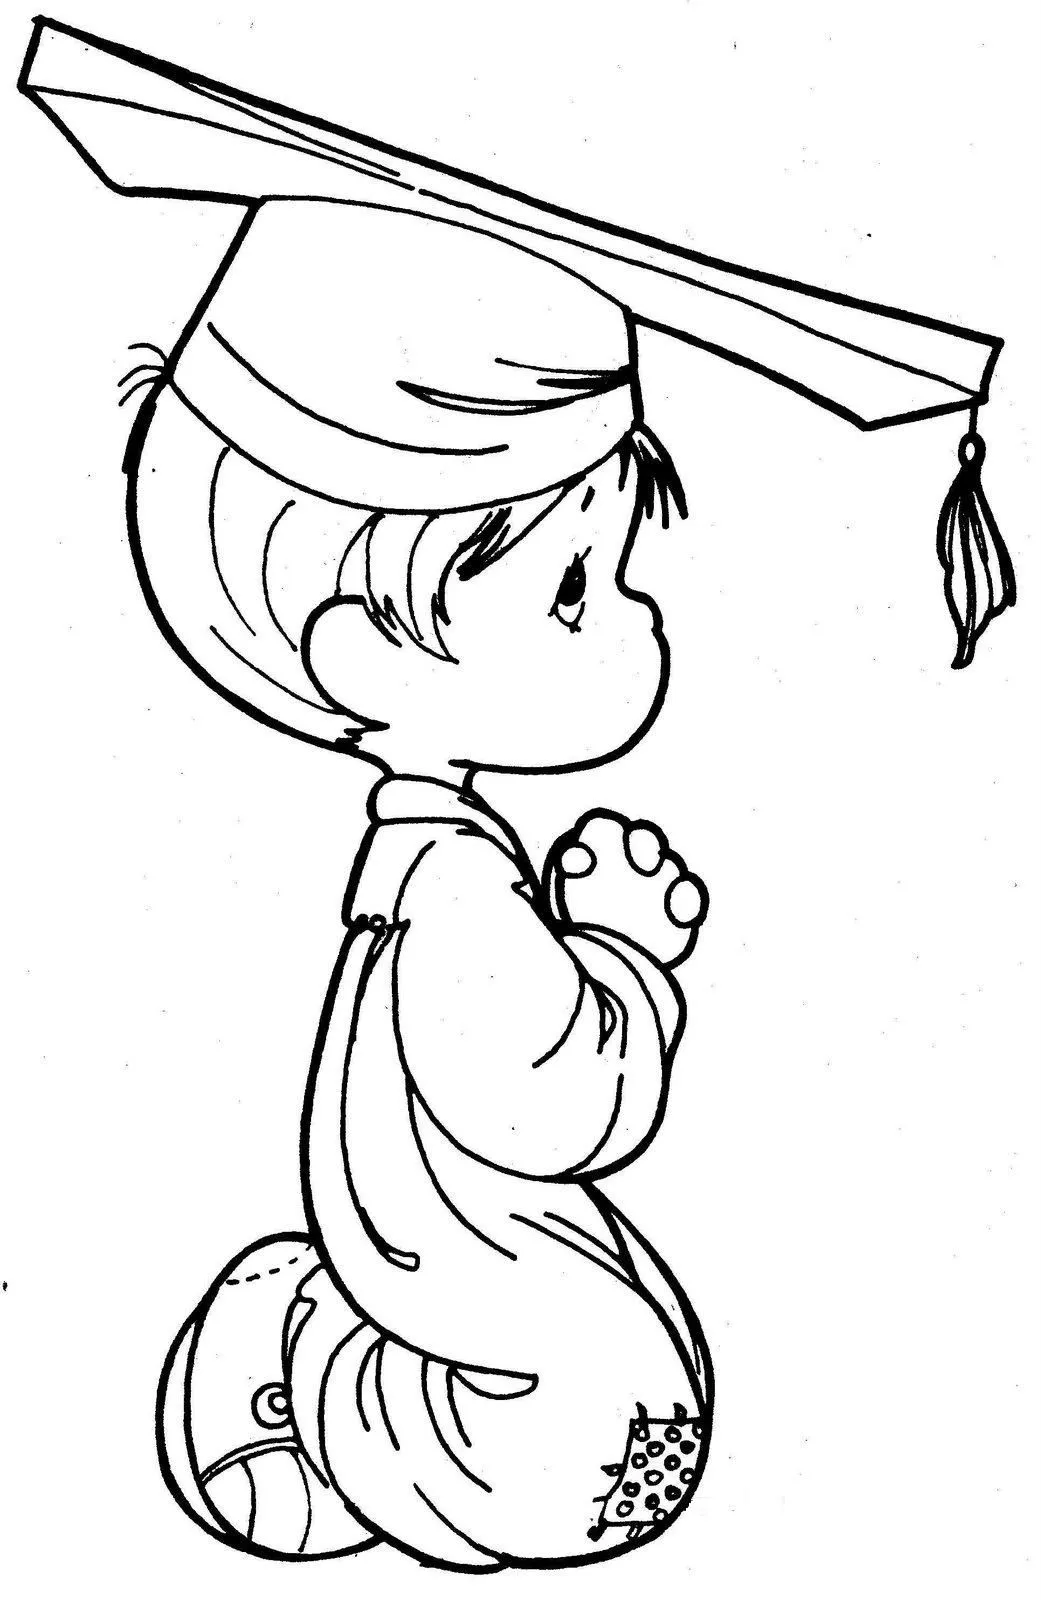 Dibujos de Precious moments de graduación - Imagui | Ocasion ...